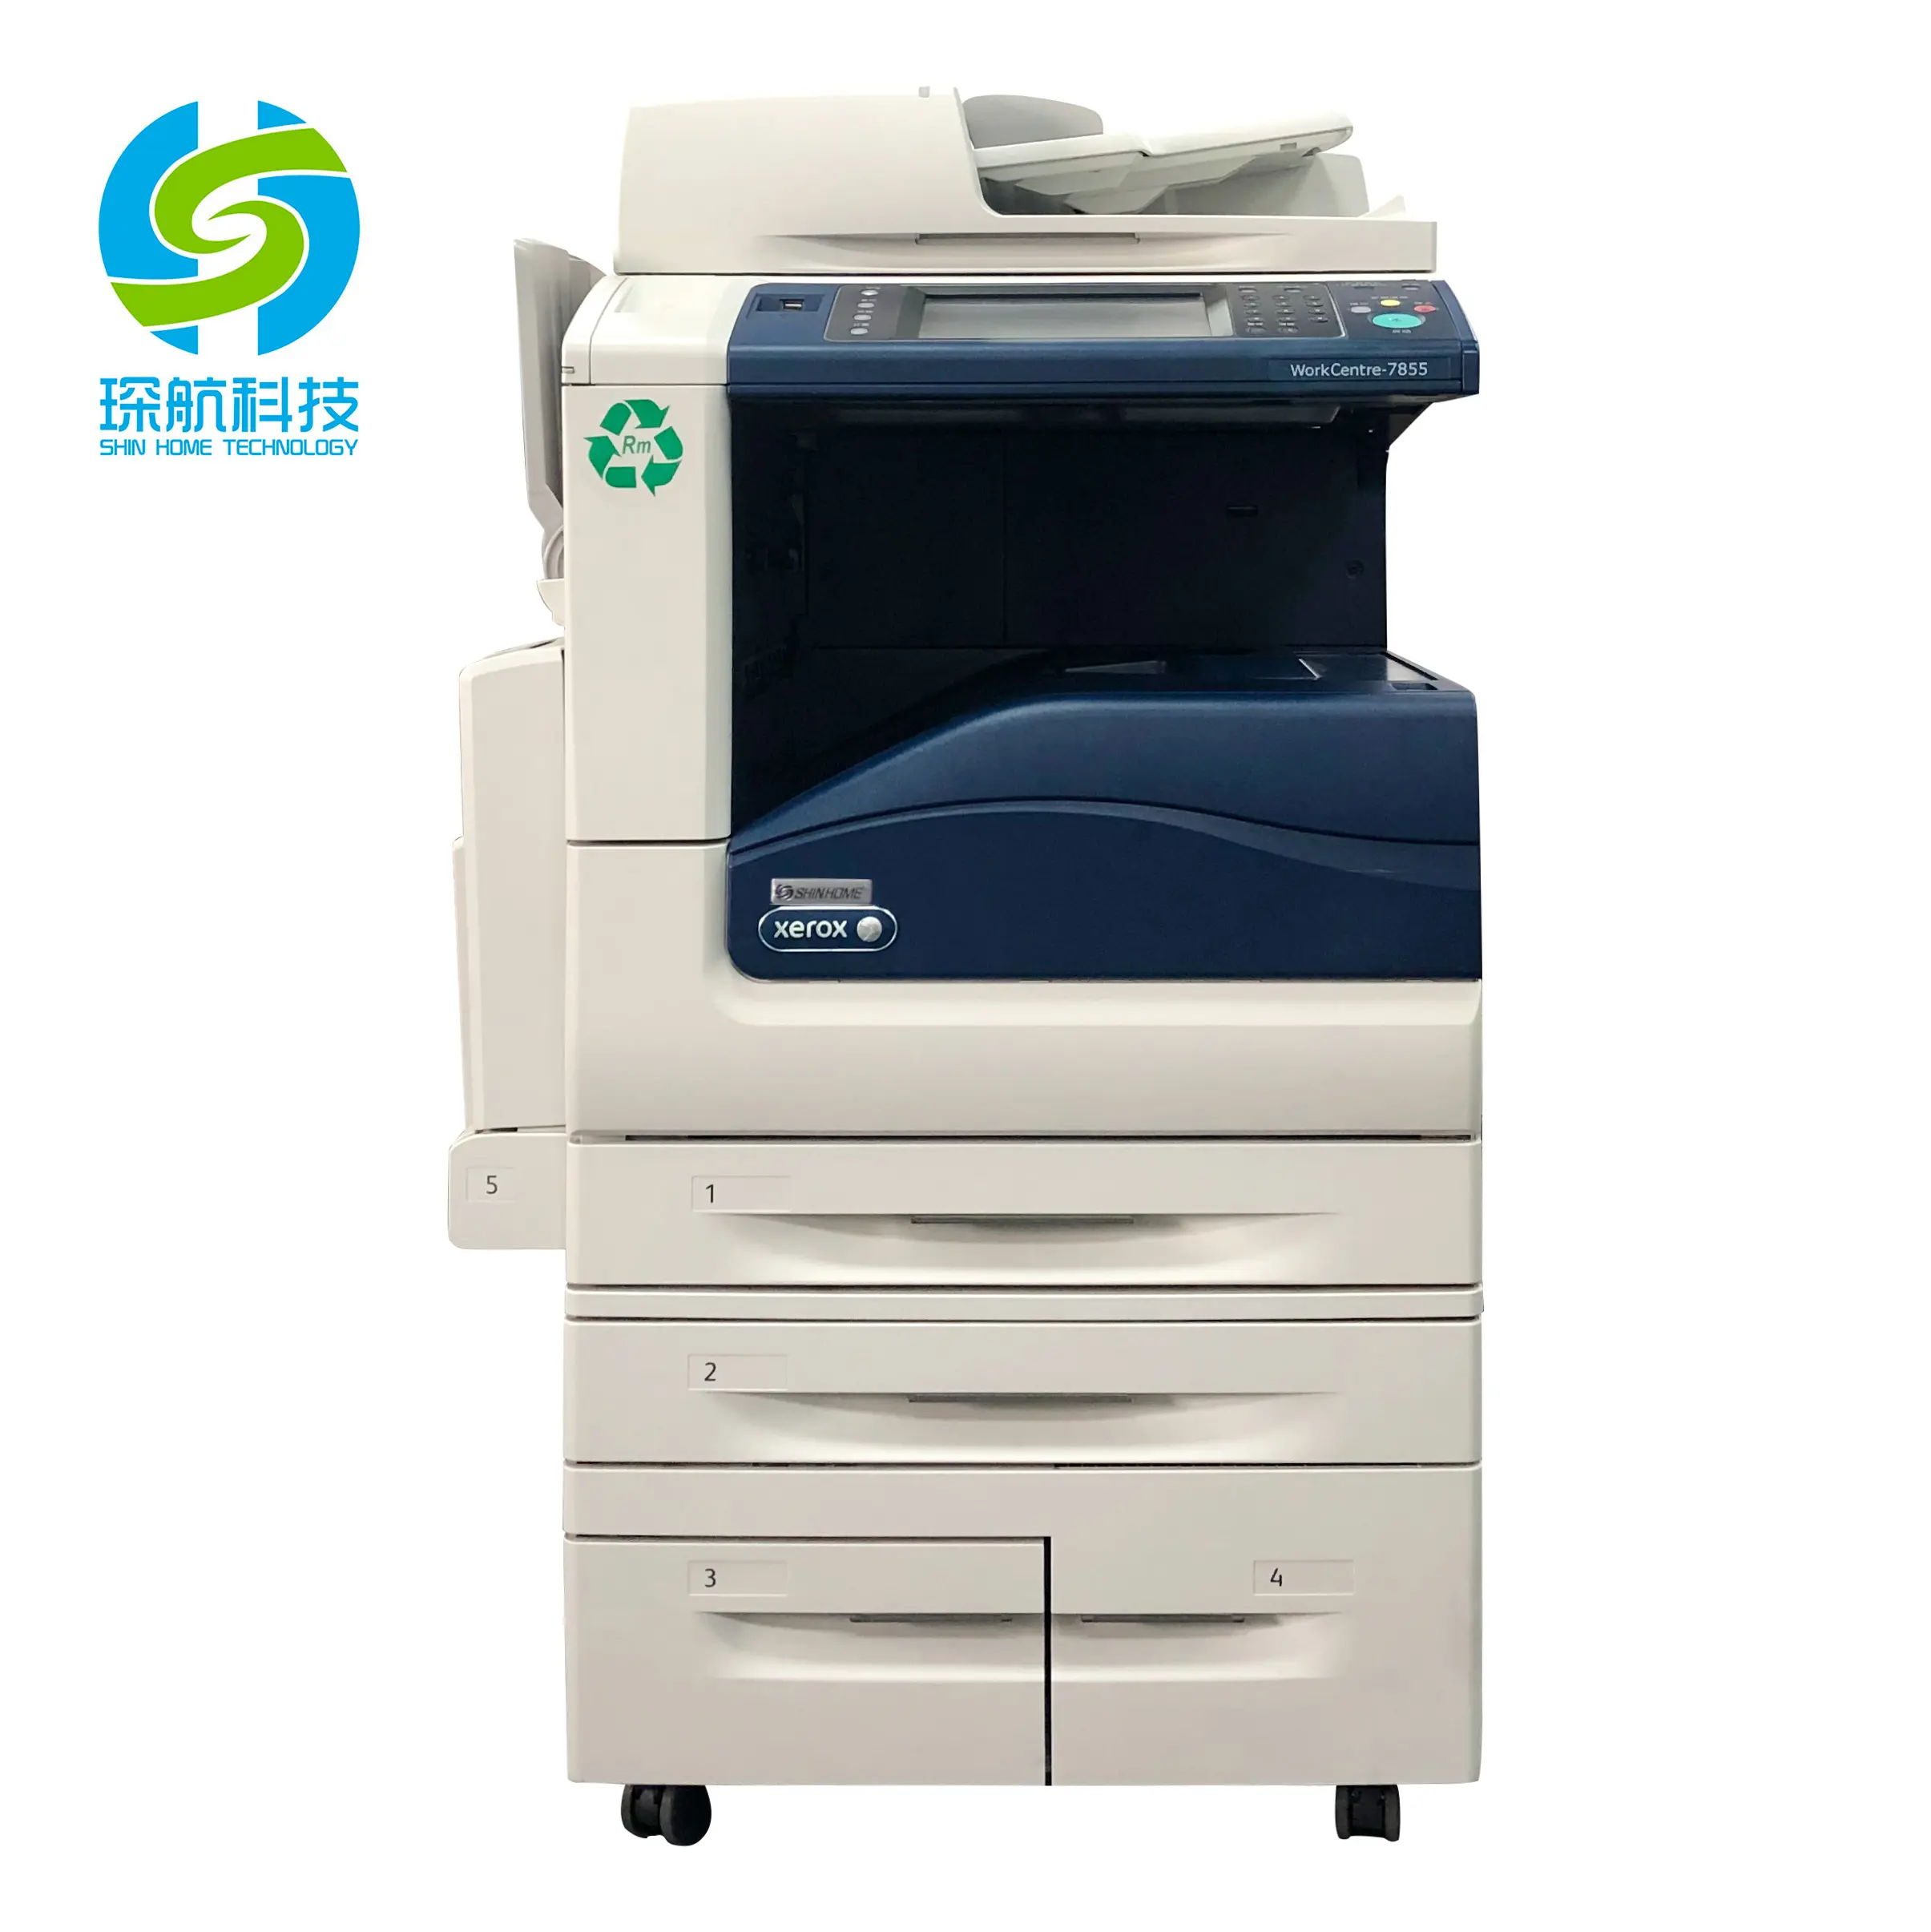 Copiadores usados multicoloridos para xerox, centro de trabalho 7855i, duplicador impressoras, alta eficiência, fotocopiadoras digitais, máquina de impressão